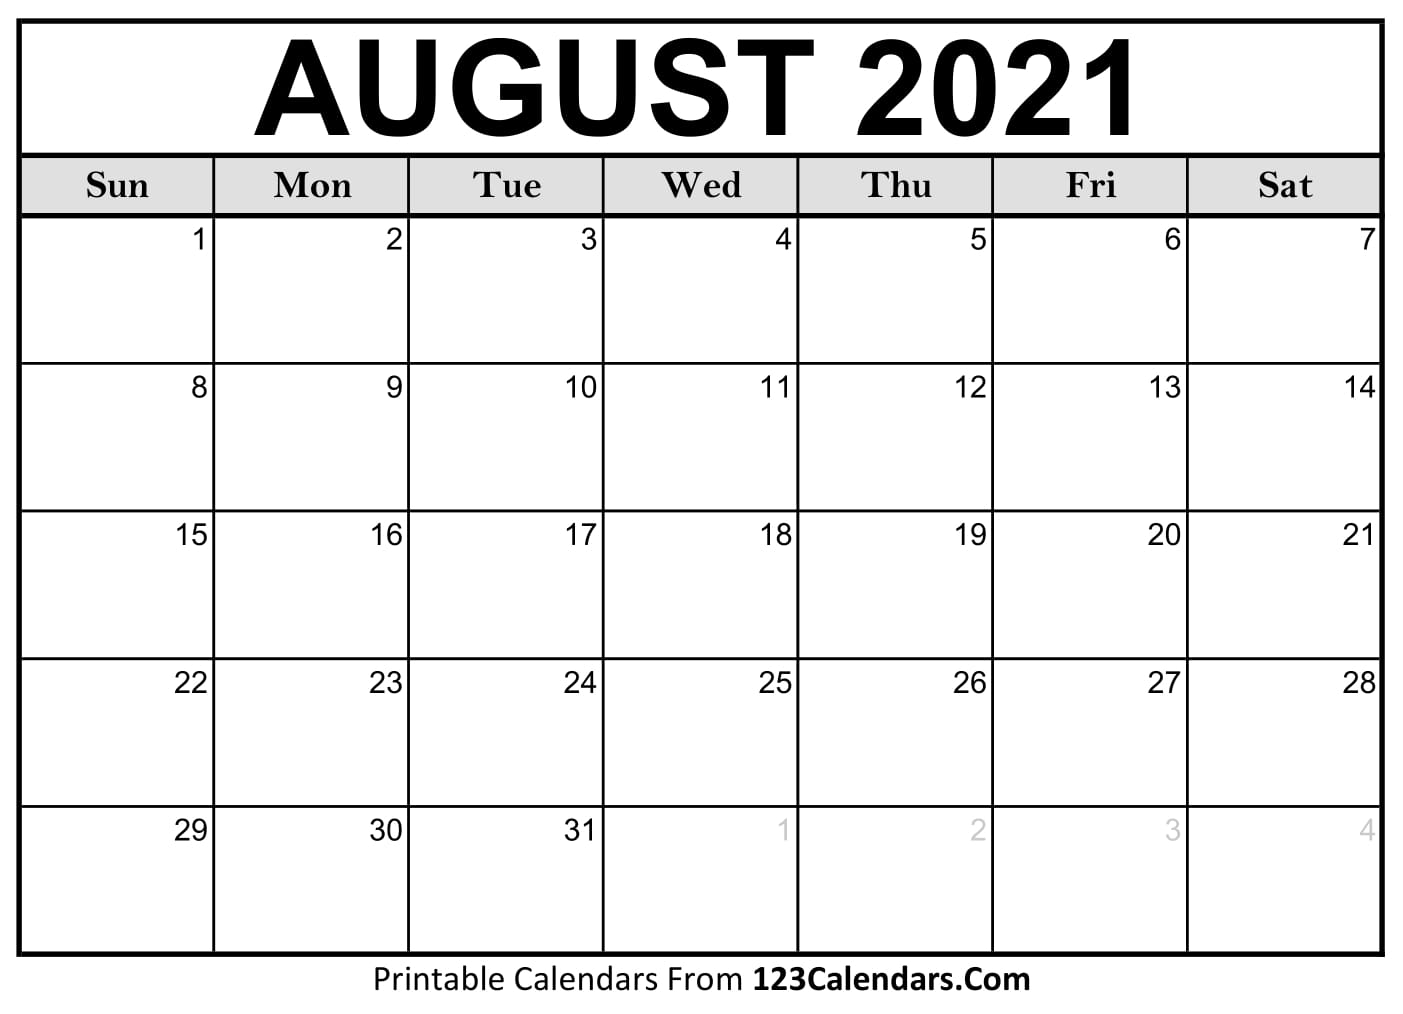 Printable August 2021 Calendar Templates 123calendars Com